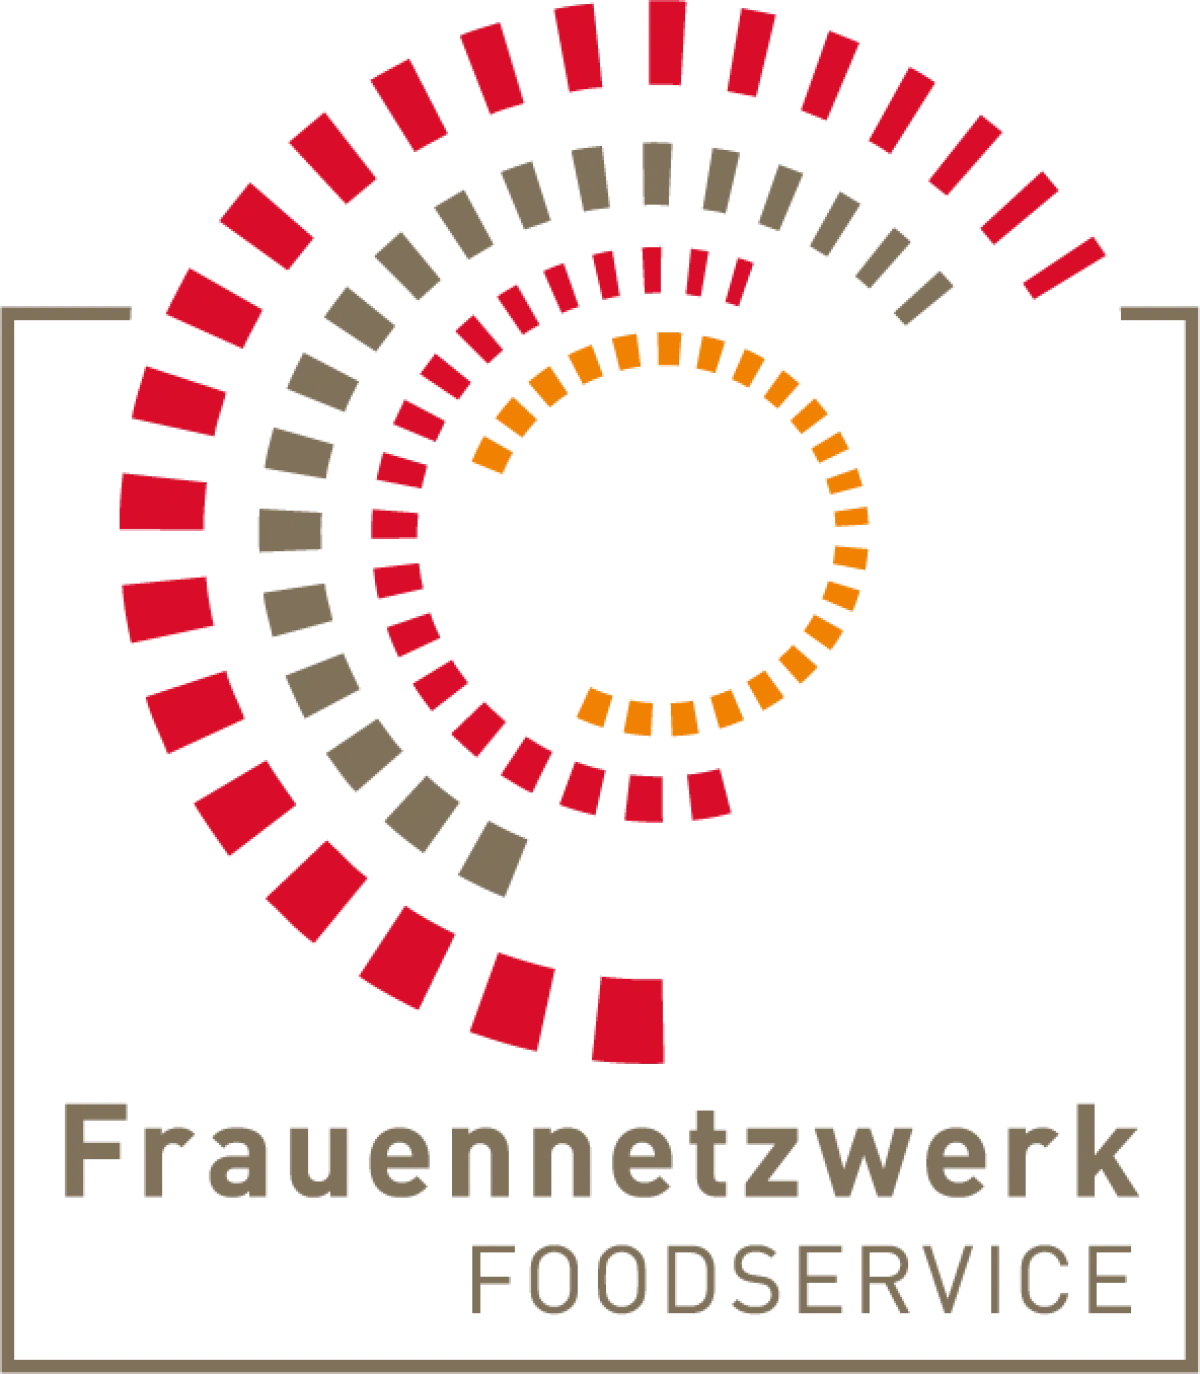 Frauennetzwerk FOODSERVICE e.V.logo